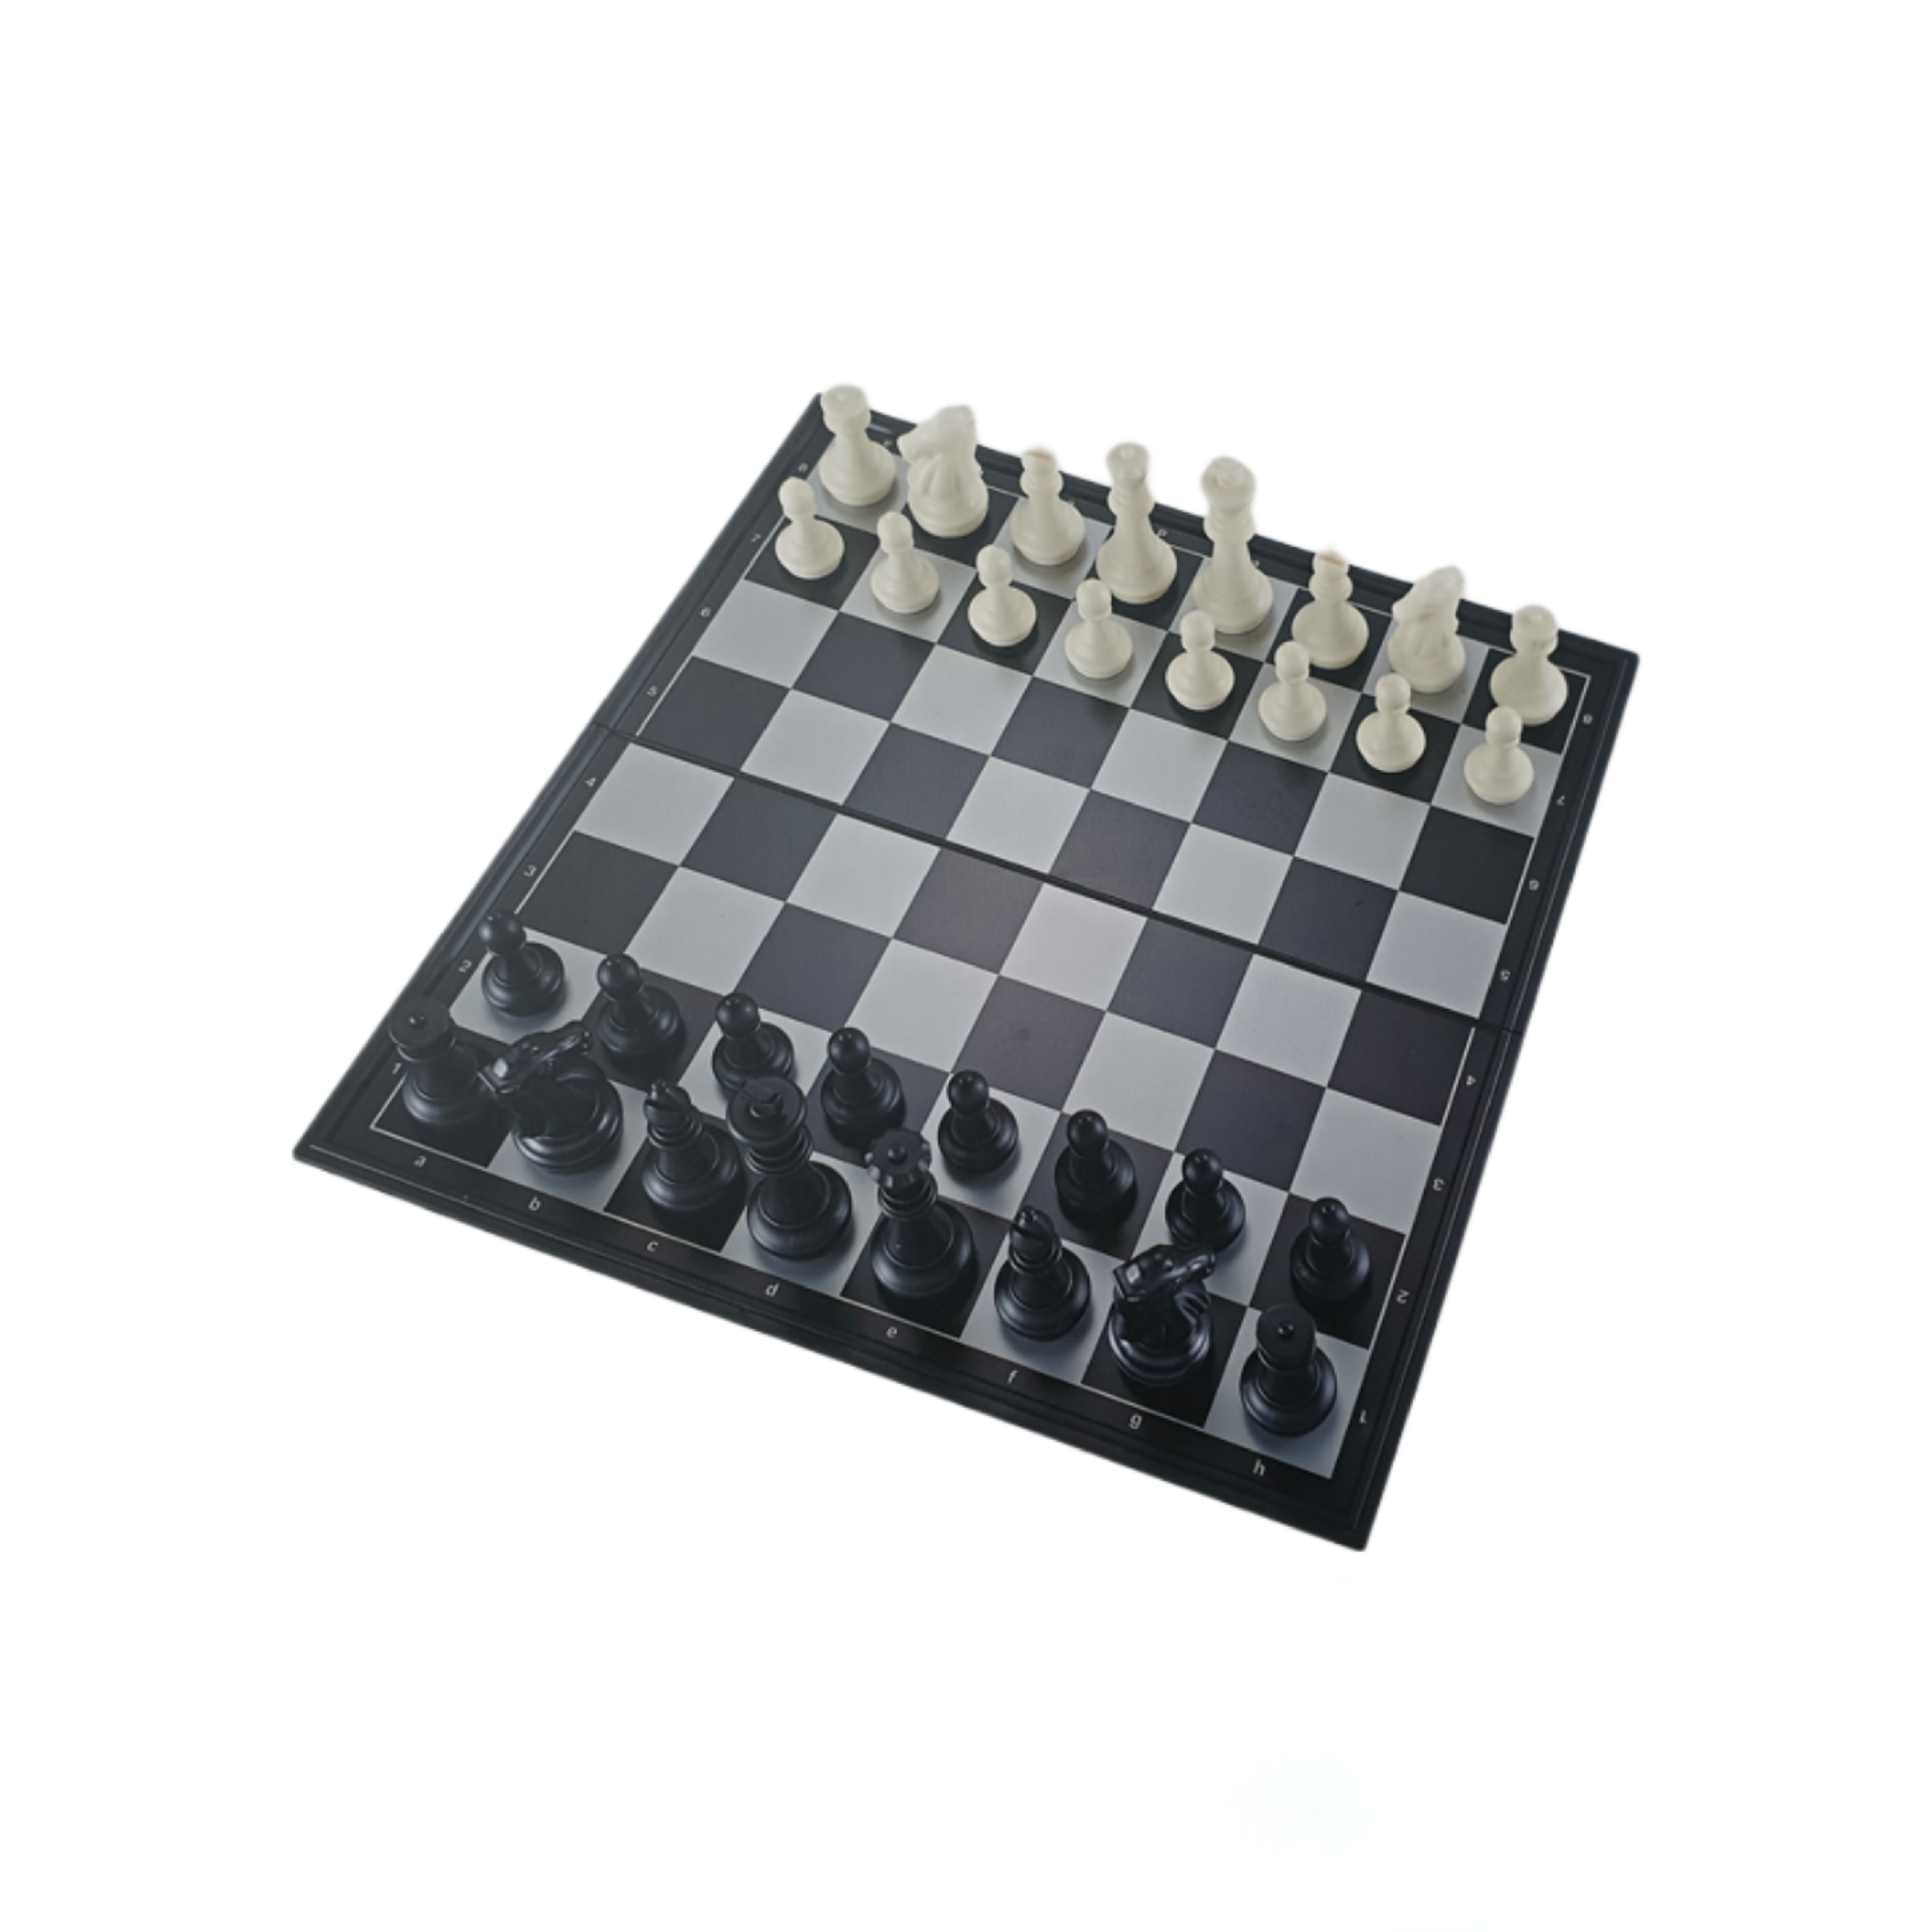 Tablero de Ajedrez Plástico Magnético con Piezas Blancas y Negras 50x50 cm. Nro. 5 - 4801